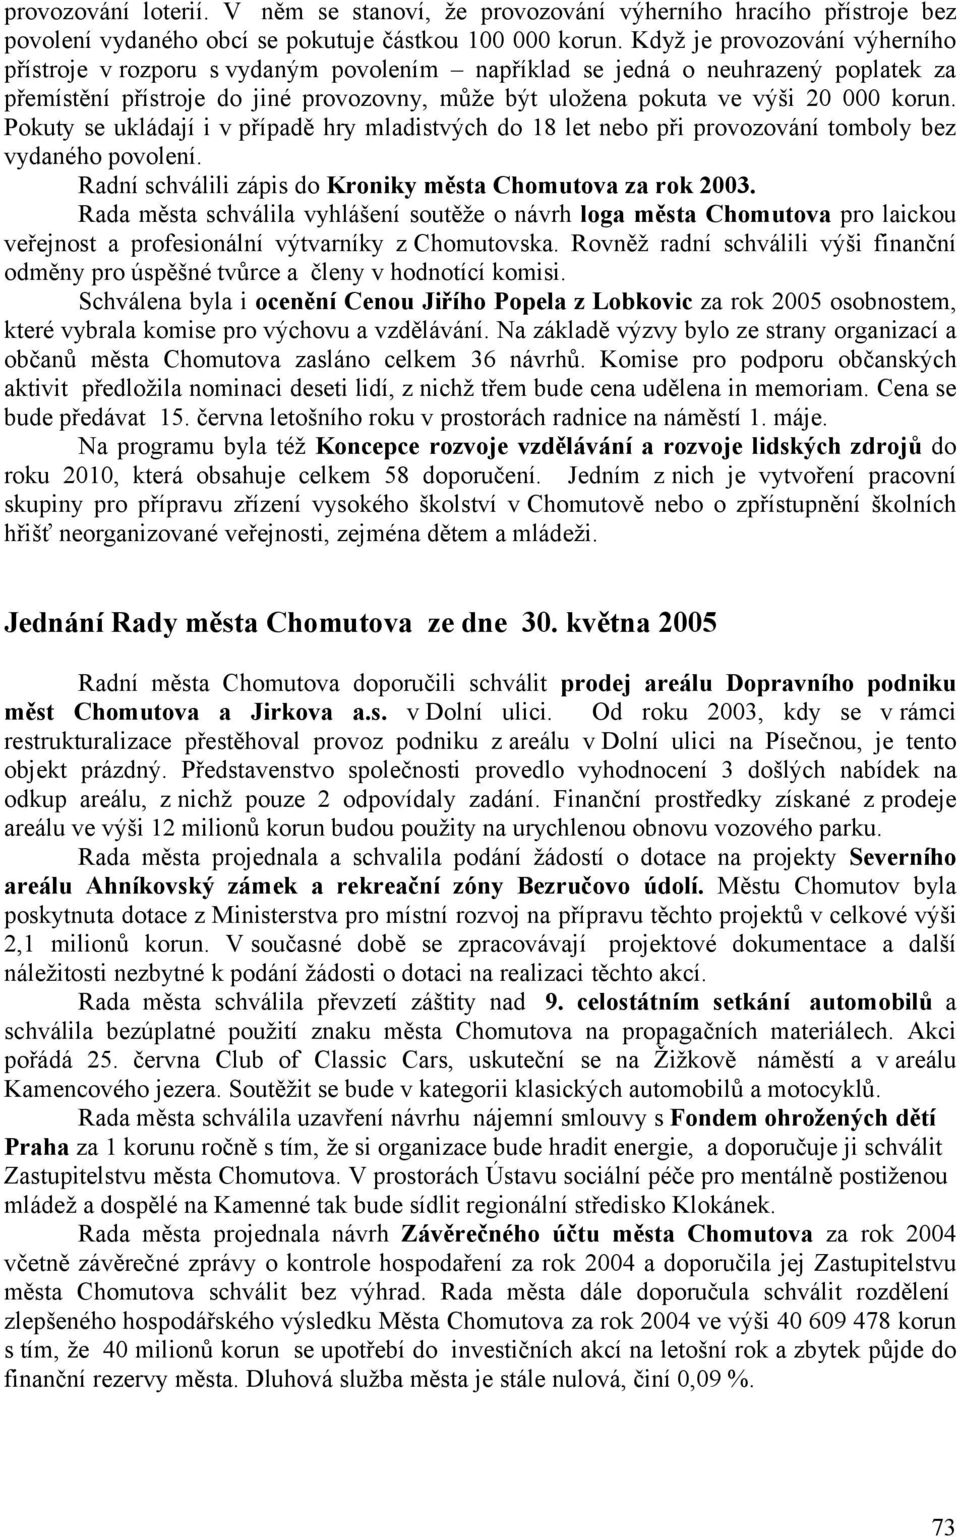 Pokuty se ukládají i v případě hry mladistvých do 18 let nebo při provozování tomboly bez vydaného povolení. Radní schválili zápis do Kroniky města Chomutova za rok 2003.